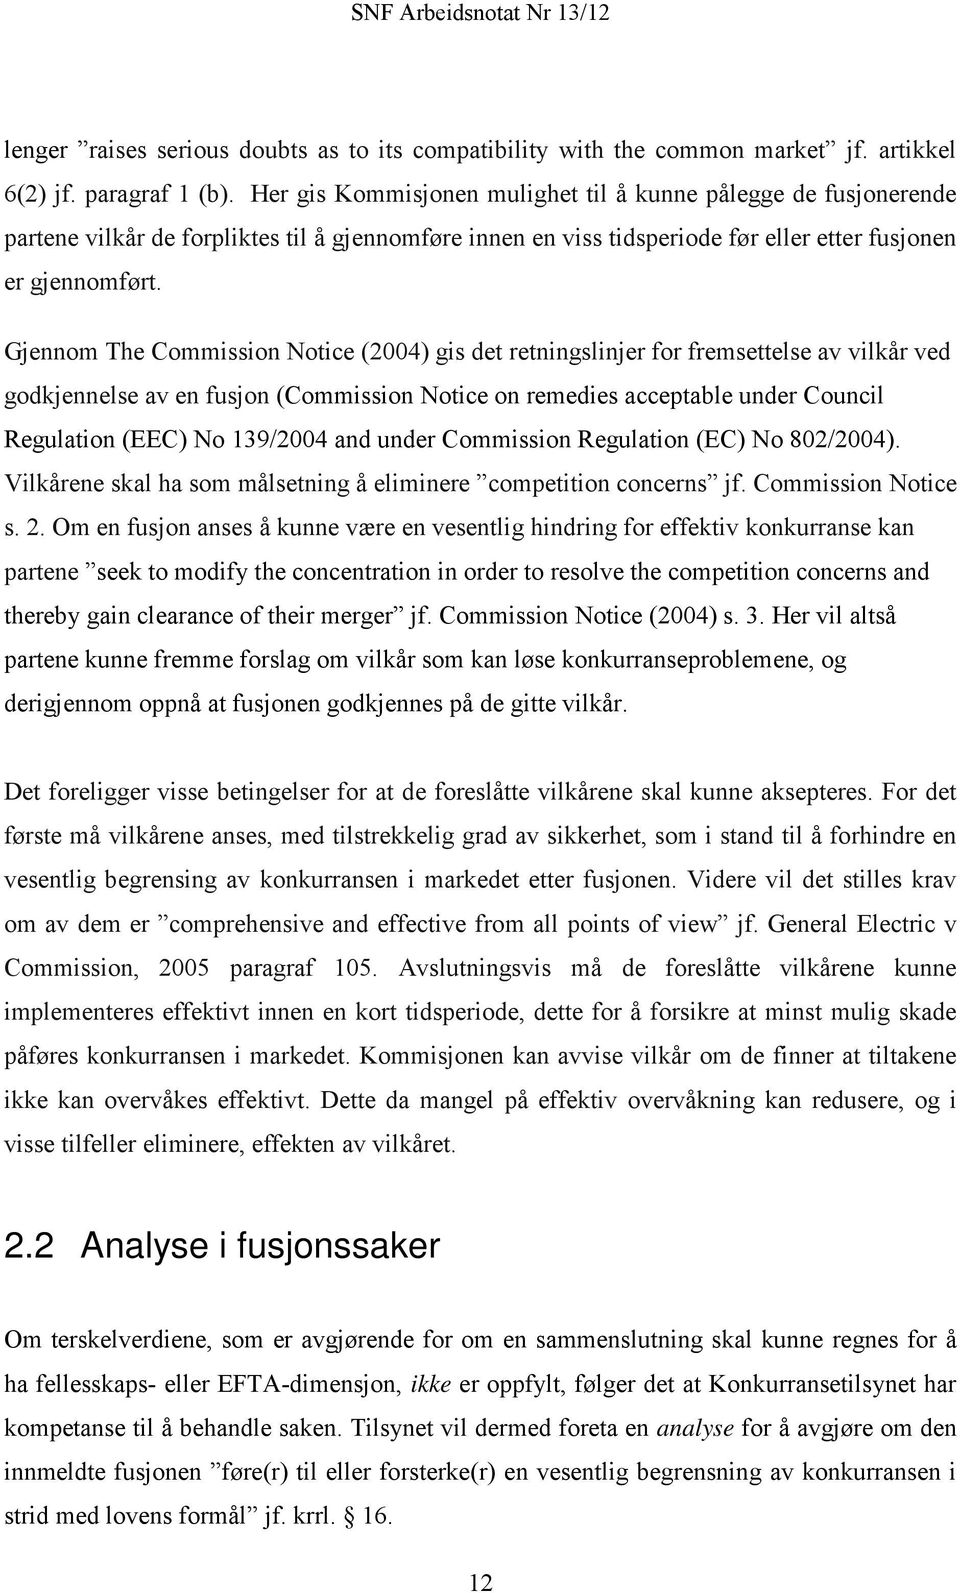 Gjennom The Commission Notice (2004) gis det retningslinjer for fremsettelse av vilkår ved godkjennelse av en fusjon (Commission Notice on remedies acceptable under Council Regulation (EEC) No